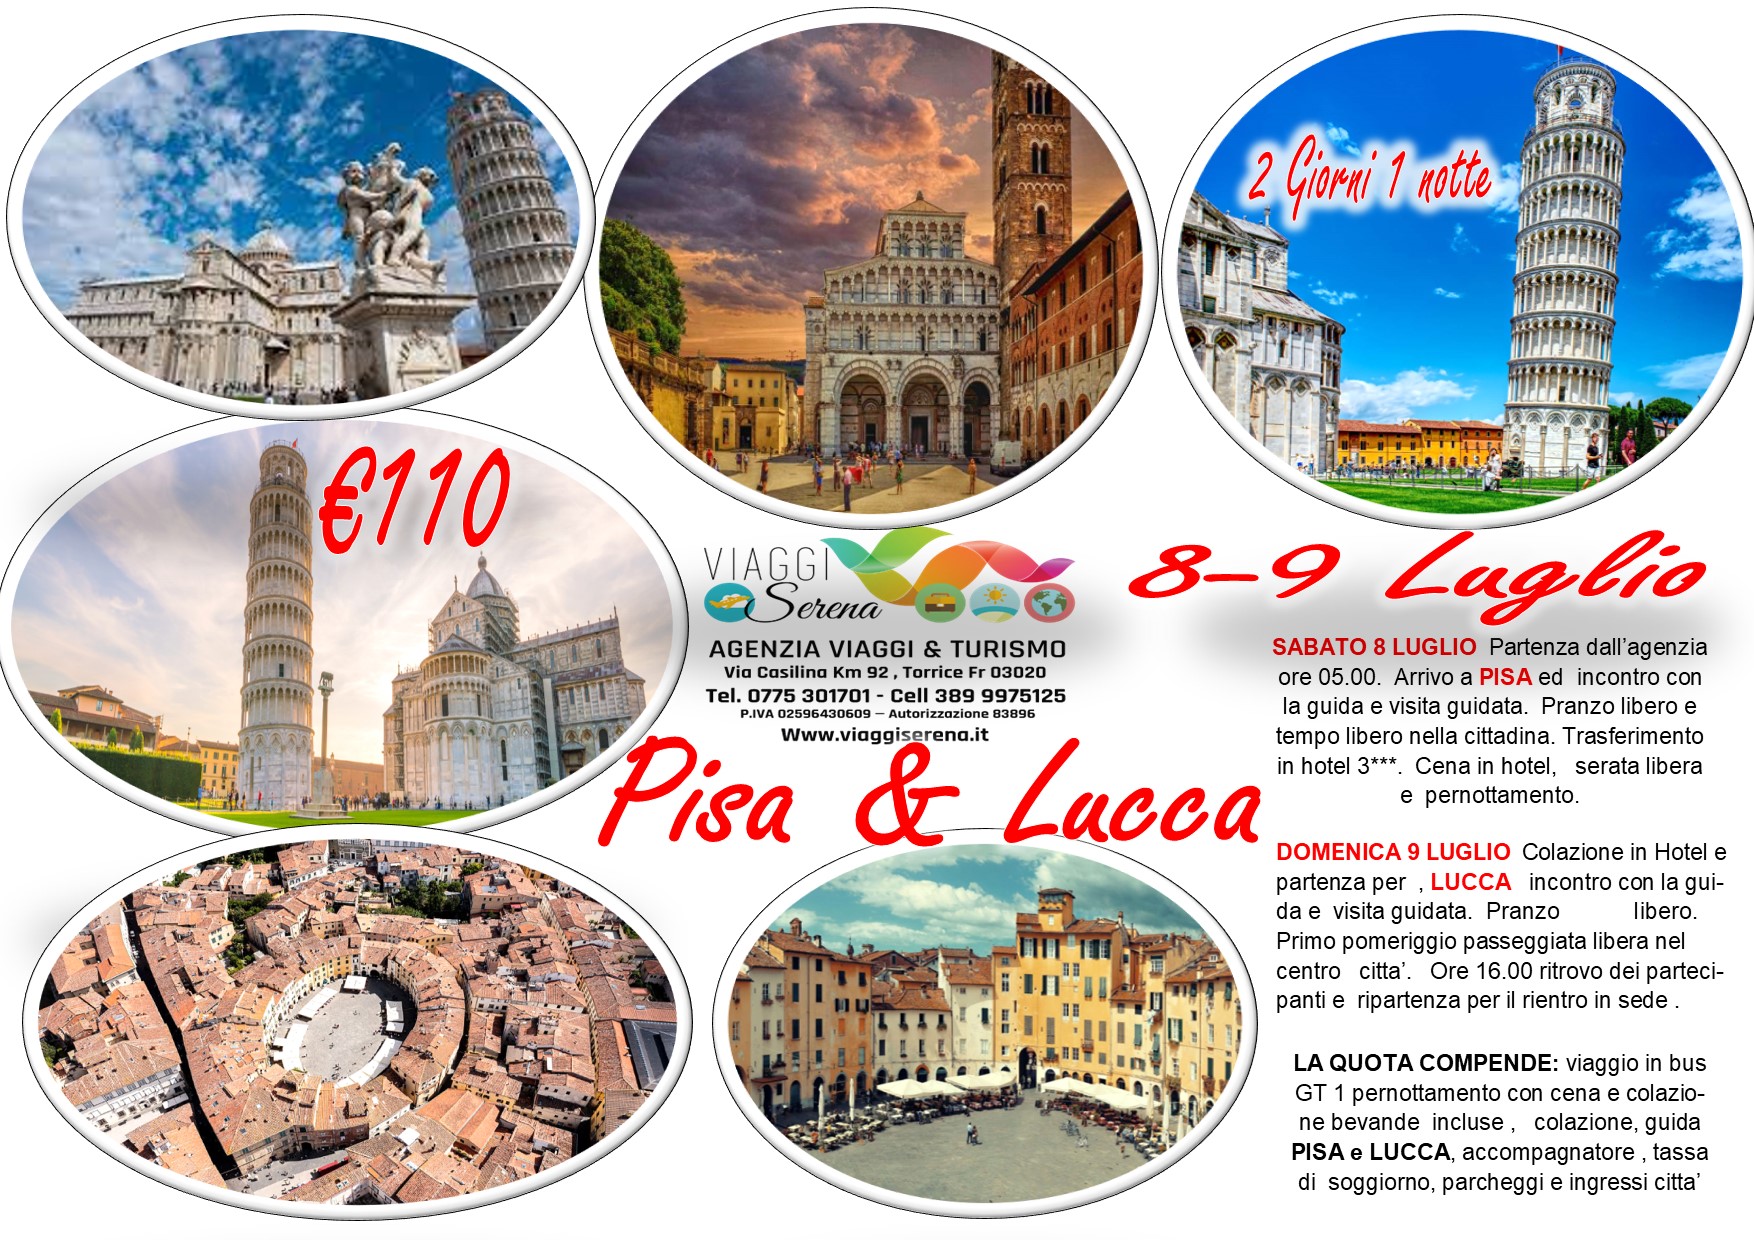 Viaggi di Gruppo: Pisa & Lucca 8-9 Luglio € 110,00